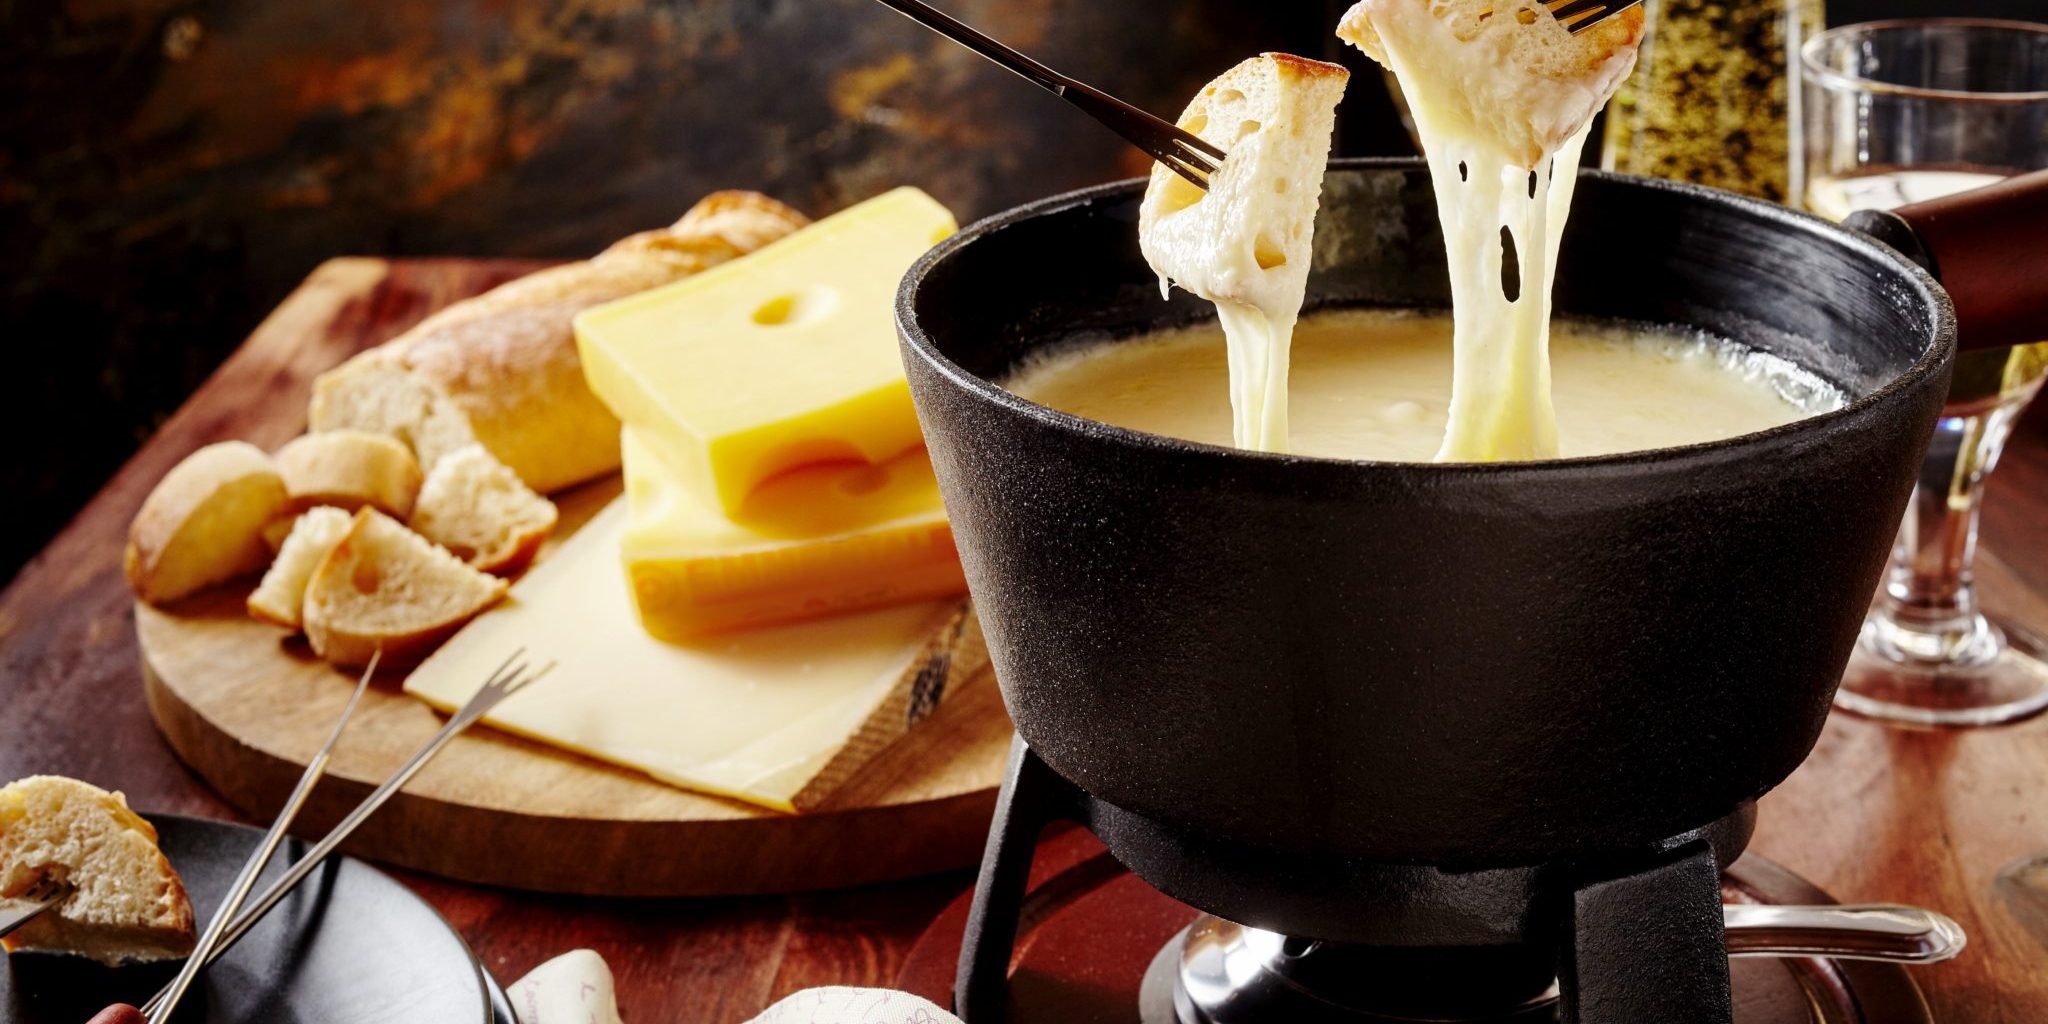 Caciotta cheese fondue recipe